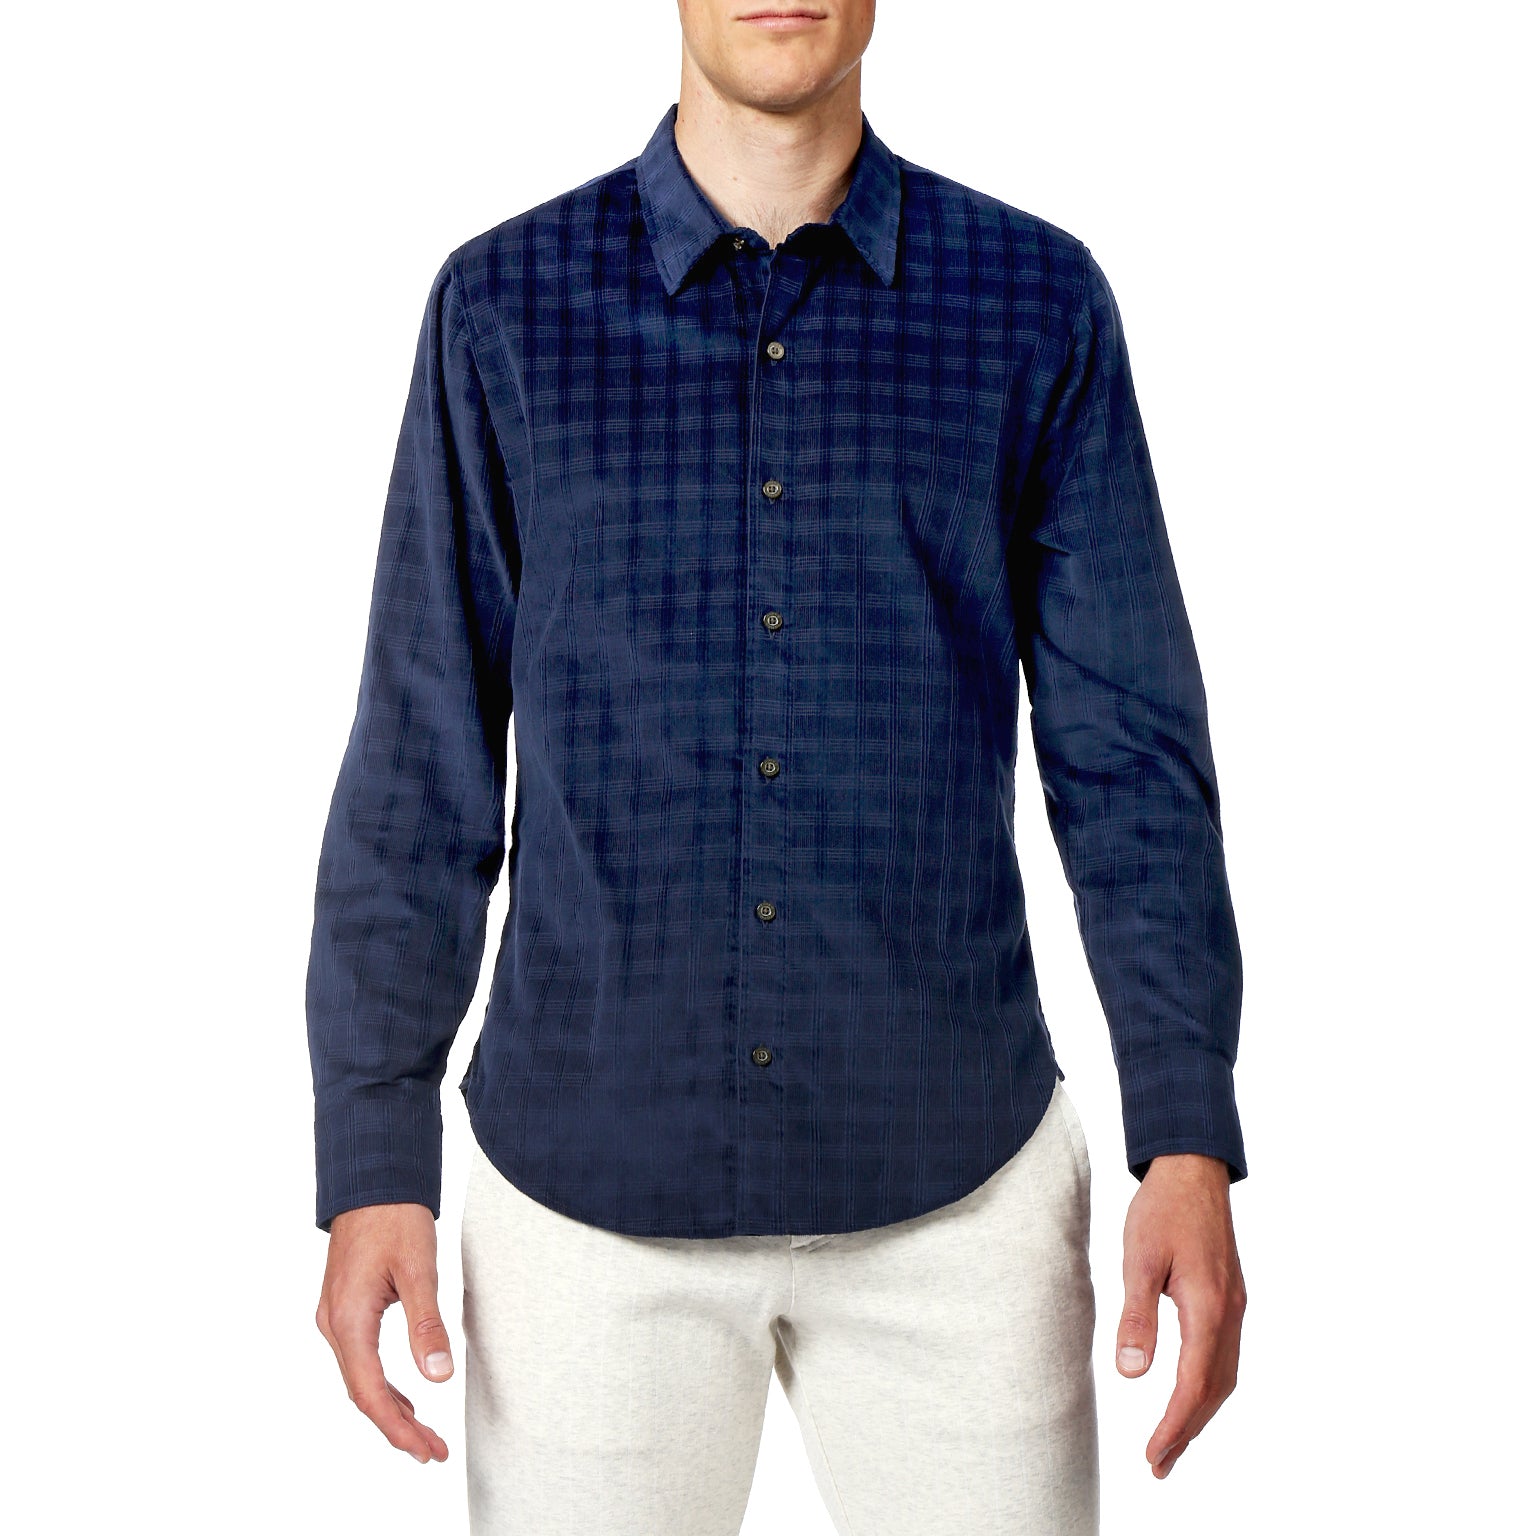 NEW- Ultramarine Corduroy Check Shirt